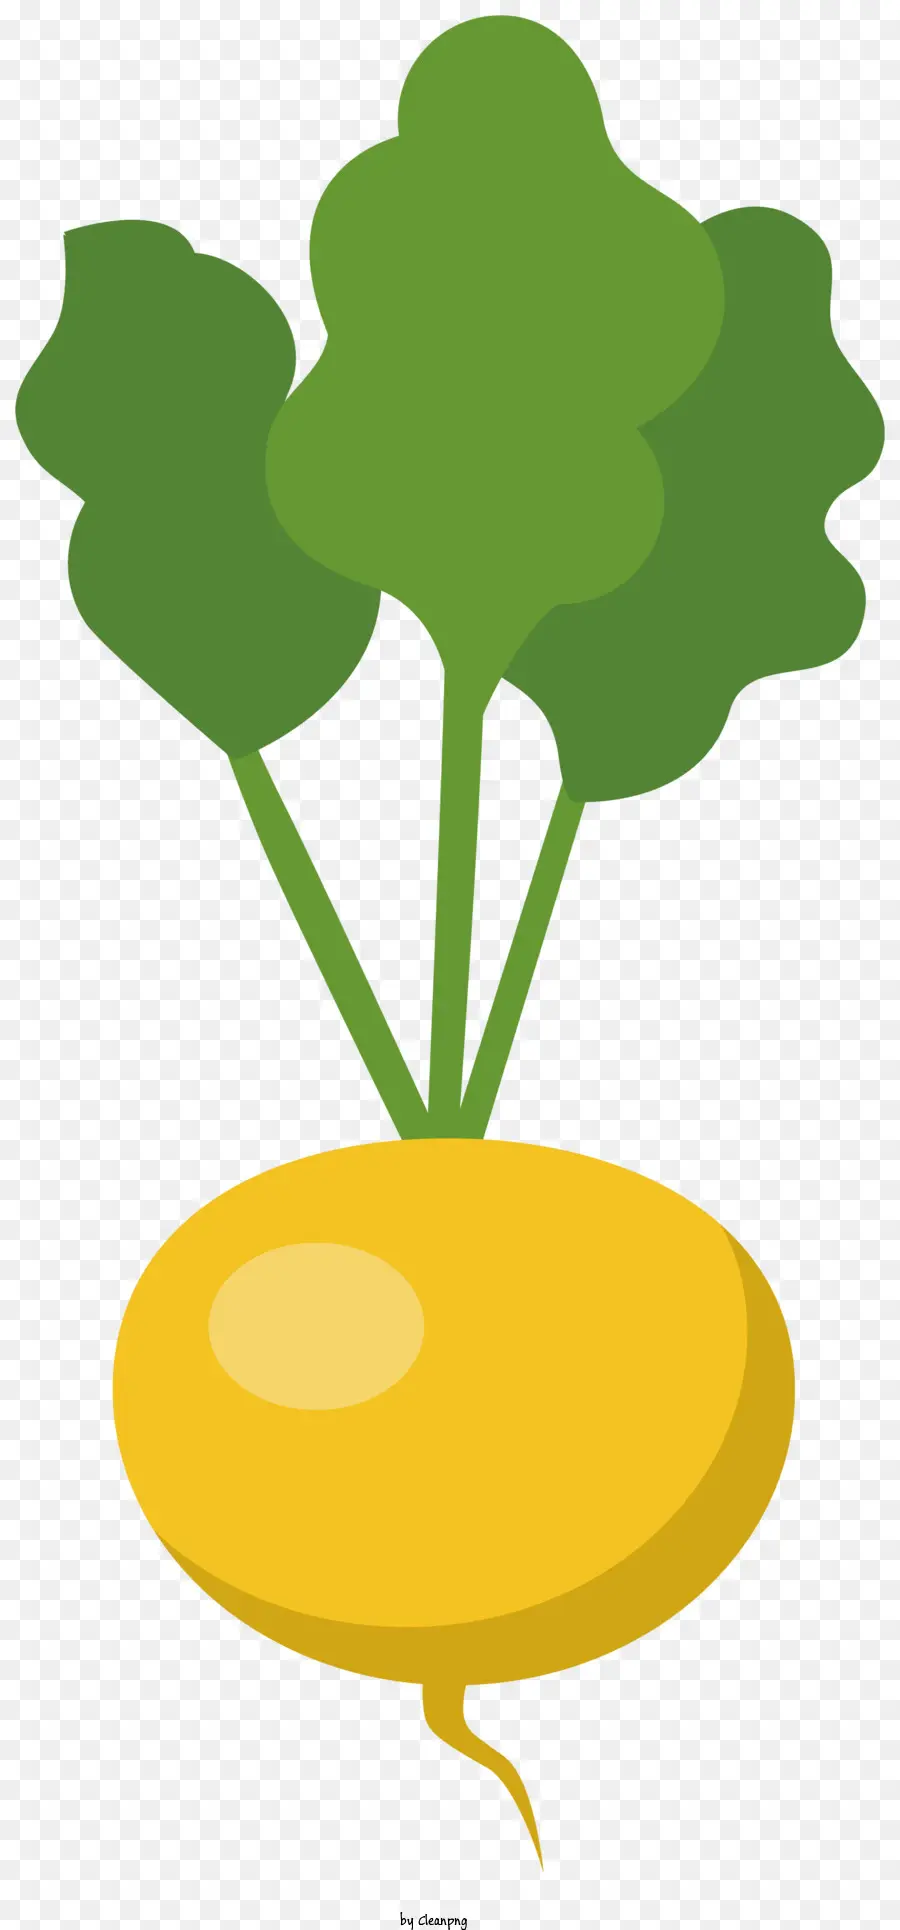 xanh lá - Cây củ cải vàng với lá màu xanh lá cây đơn